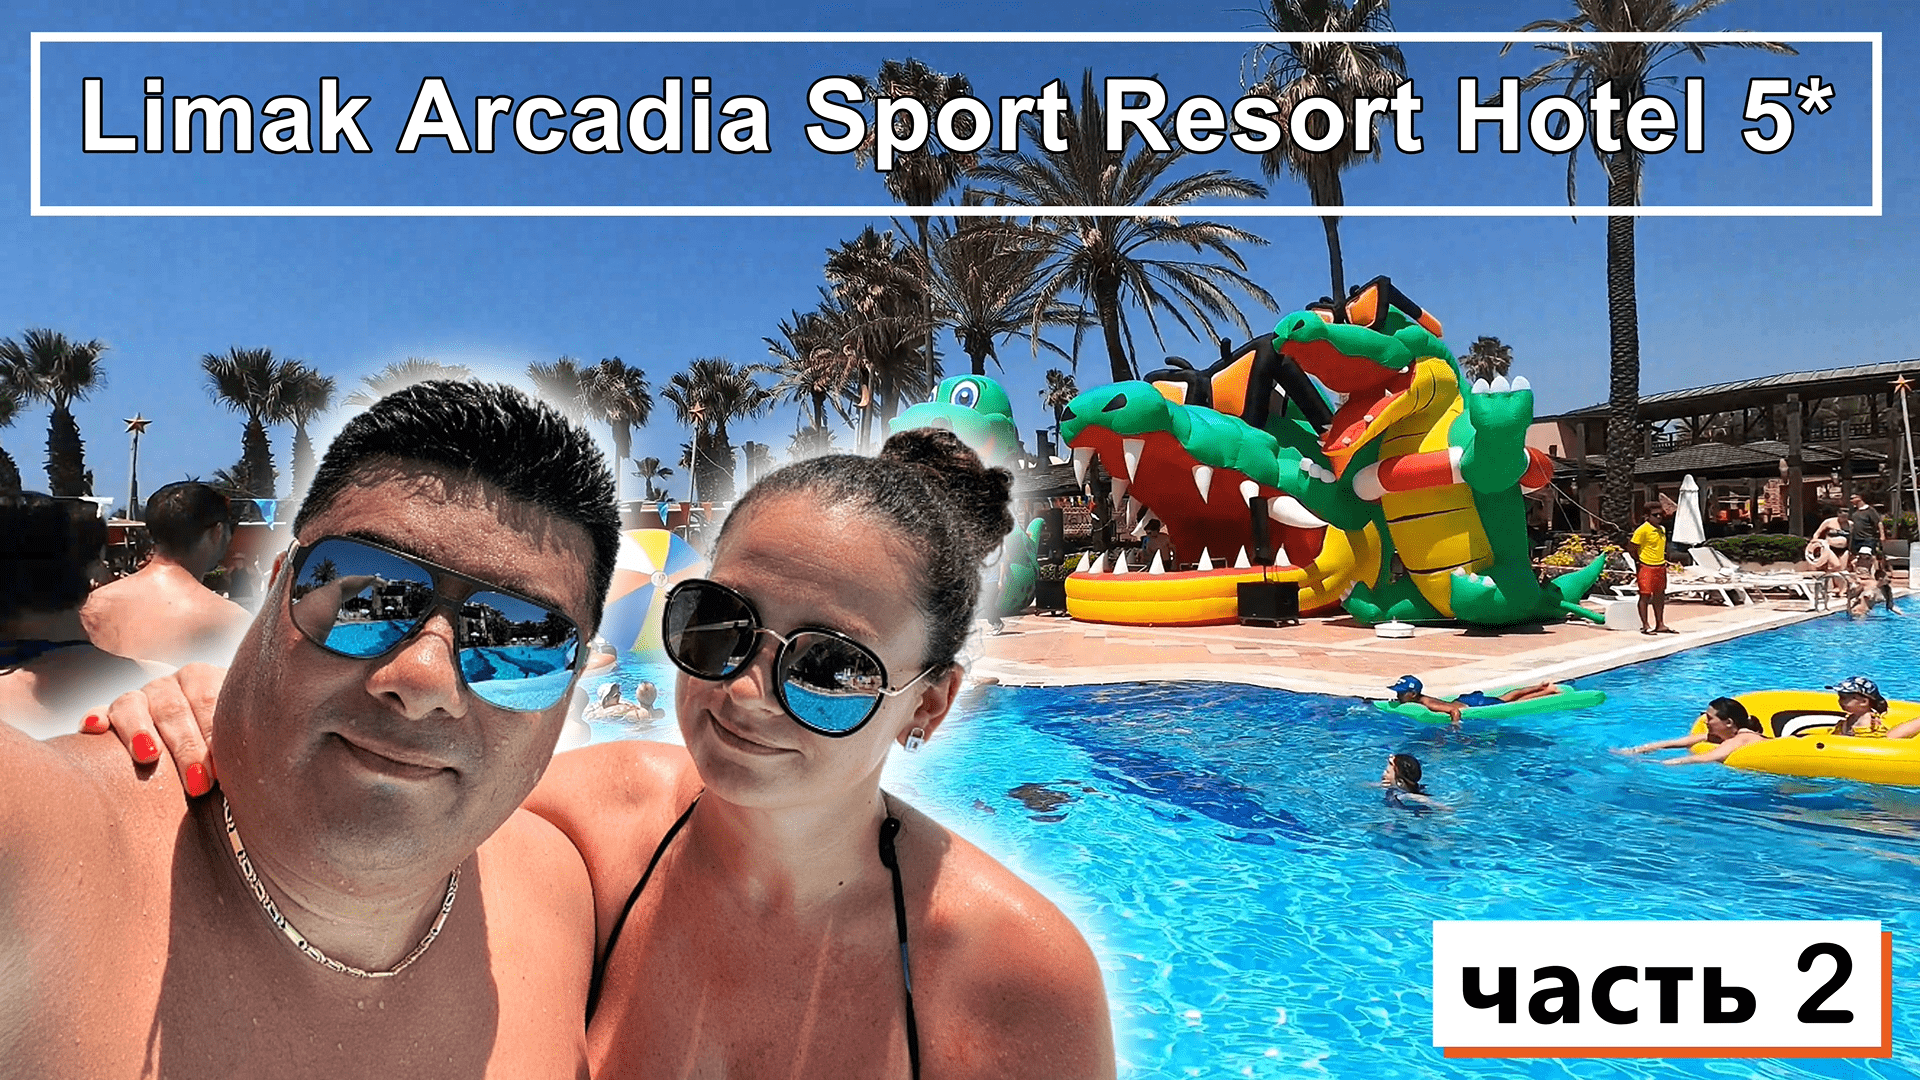 Limak Arcadia Sport Resort Hotel 5*!!! Пенная вечеринка!!! Старая ТУРЦИЯ!!! А причем здесь СПОРТ ???